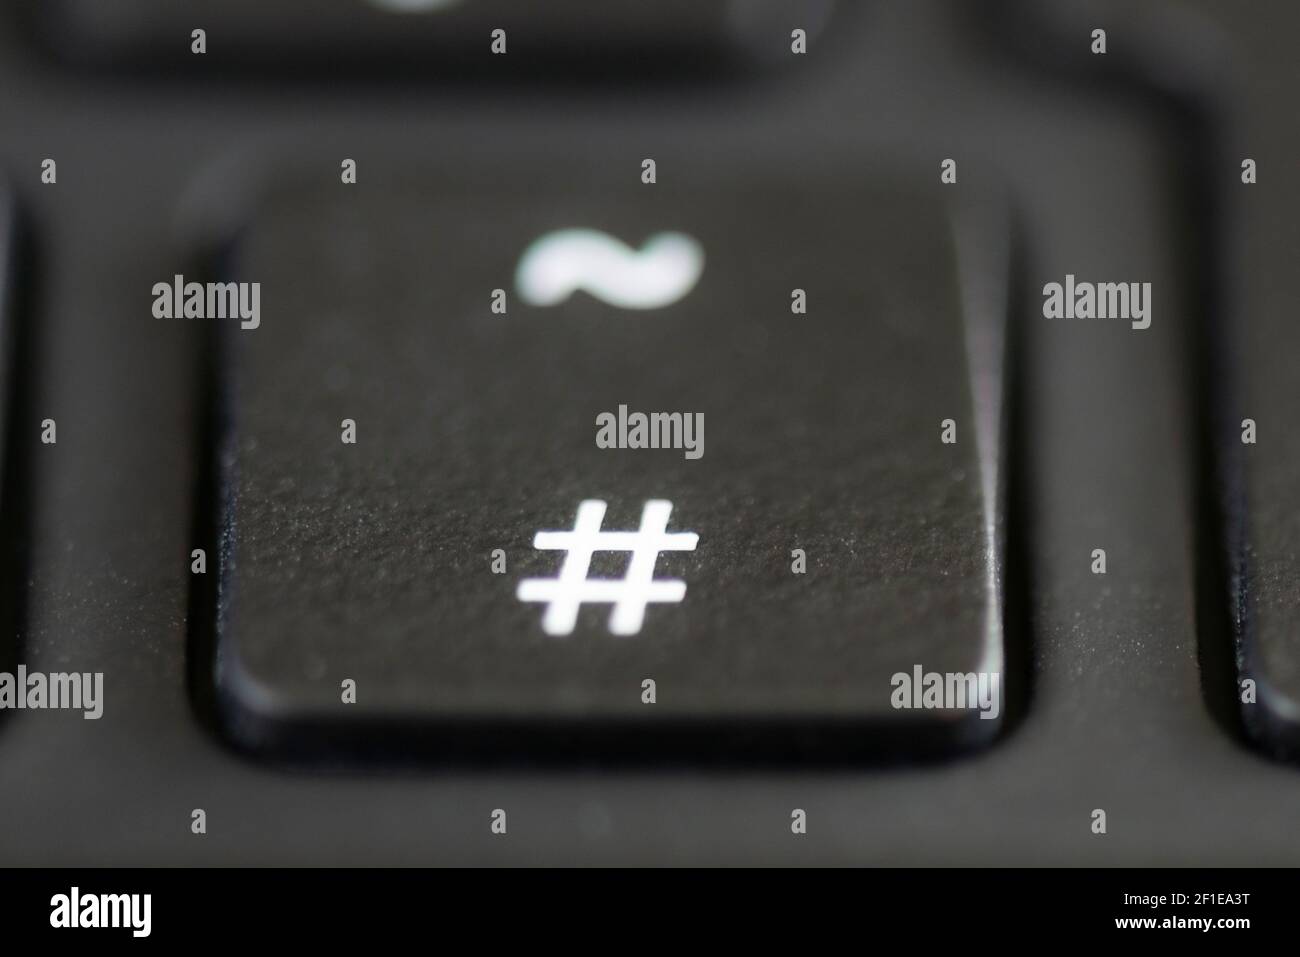 Die Raute- und Tilde-Taste auf einer Laptop-Tastatur Stockfotografie - Alamy